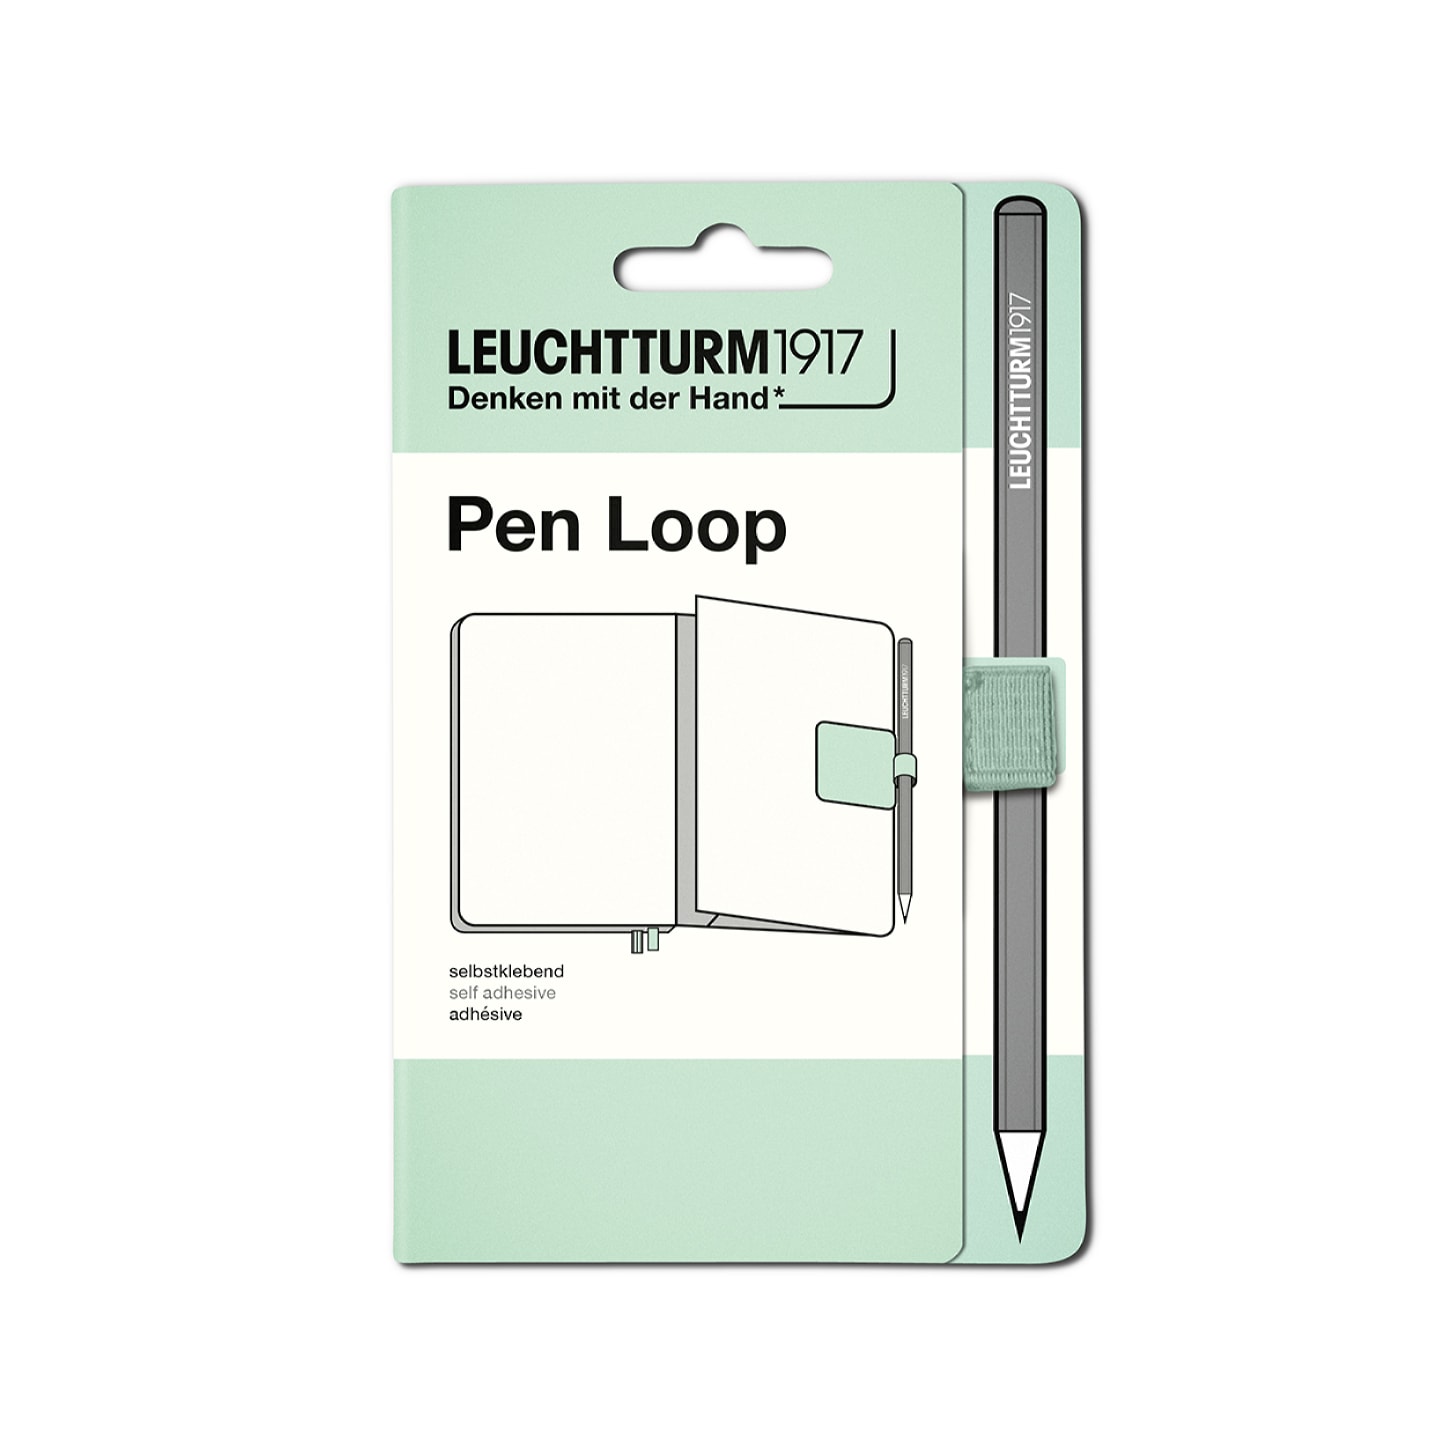 Петля самоклеящаяся Pen Loop для ручек на блокноты Leuchtturm1917 цвет Мятный